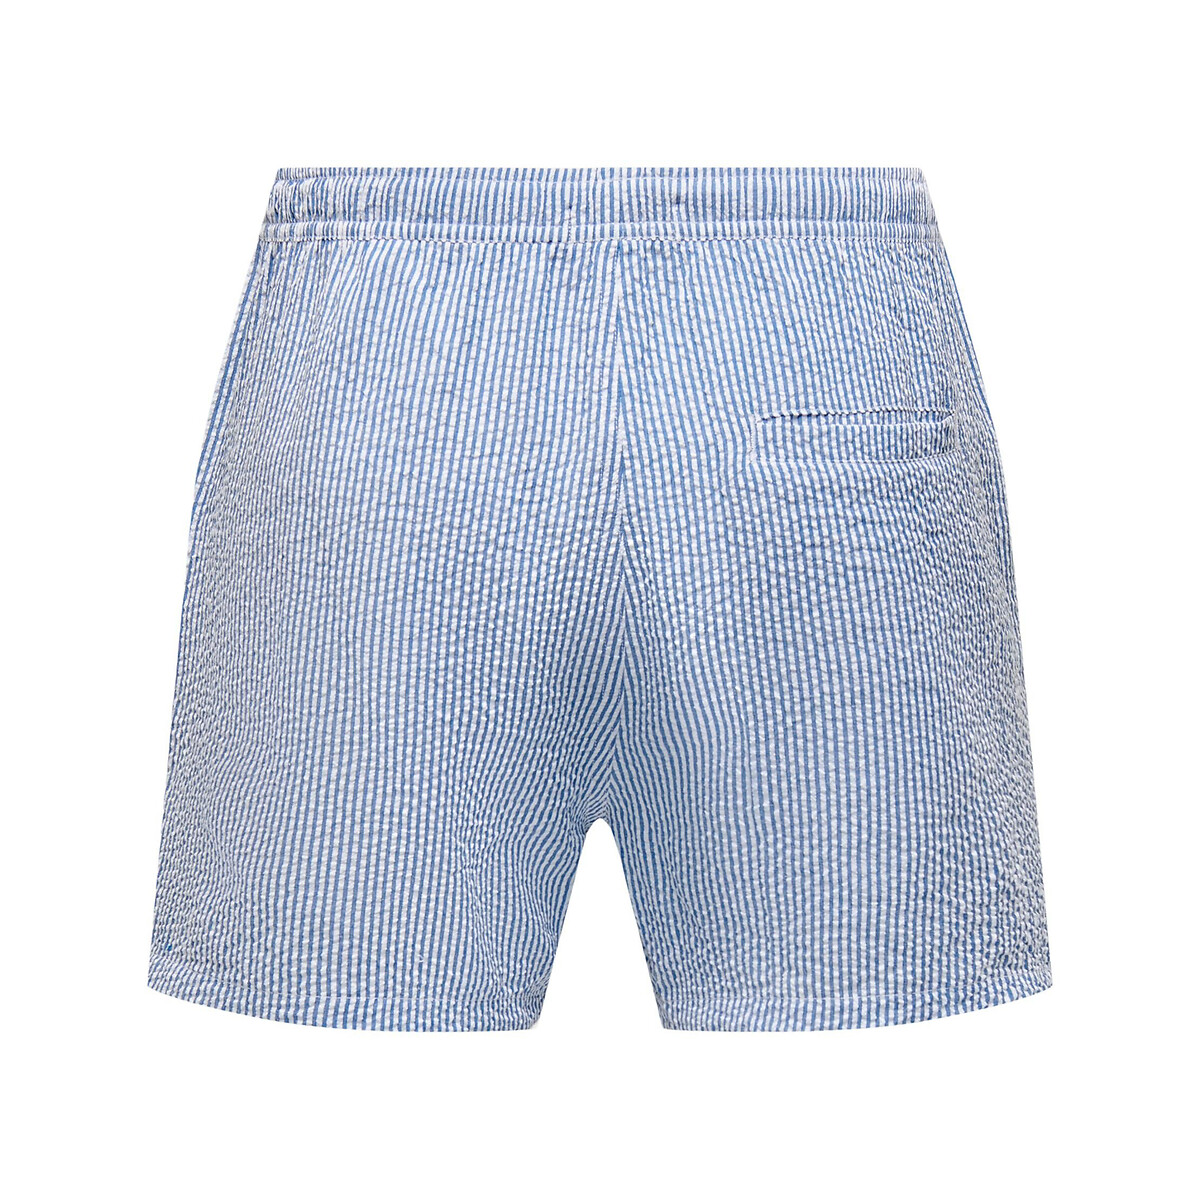 Шорты Пляжные в полоску из легкой полосатой ткани Ted XL синий LaRedoute, размер XL - фото 2